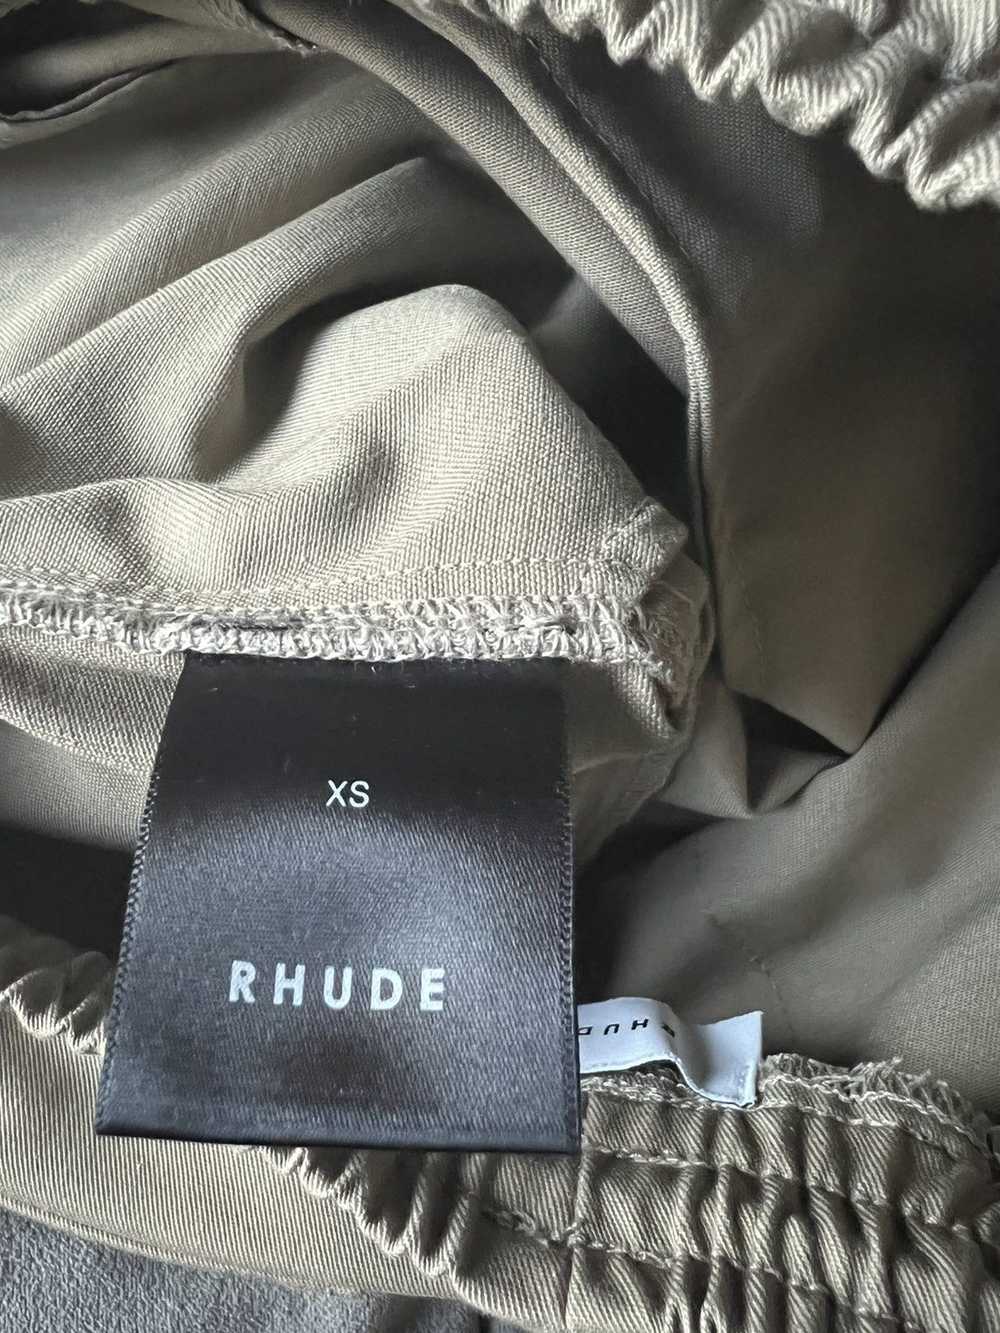 Rhude Rhude Canvas Shorts - image 6